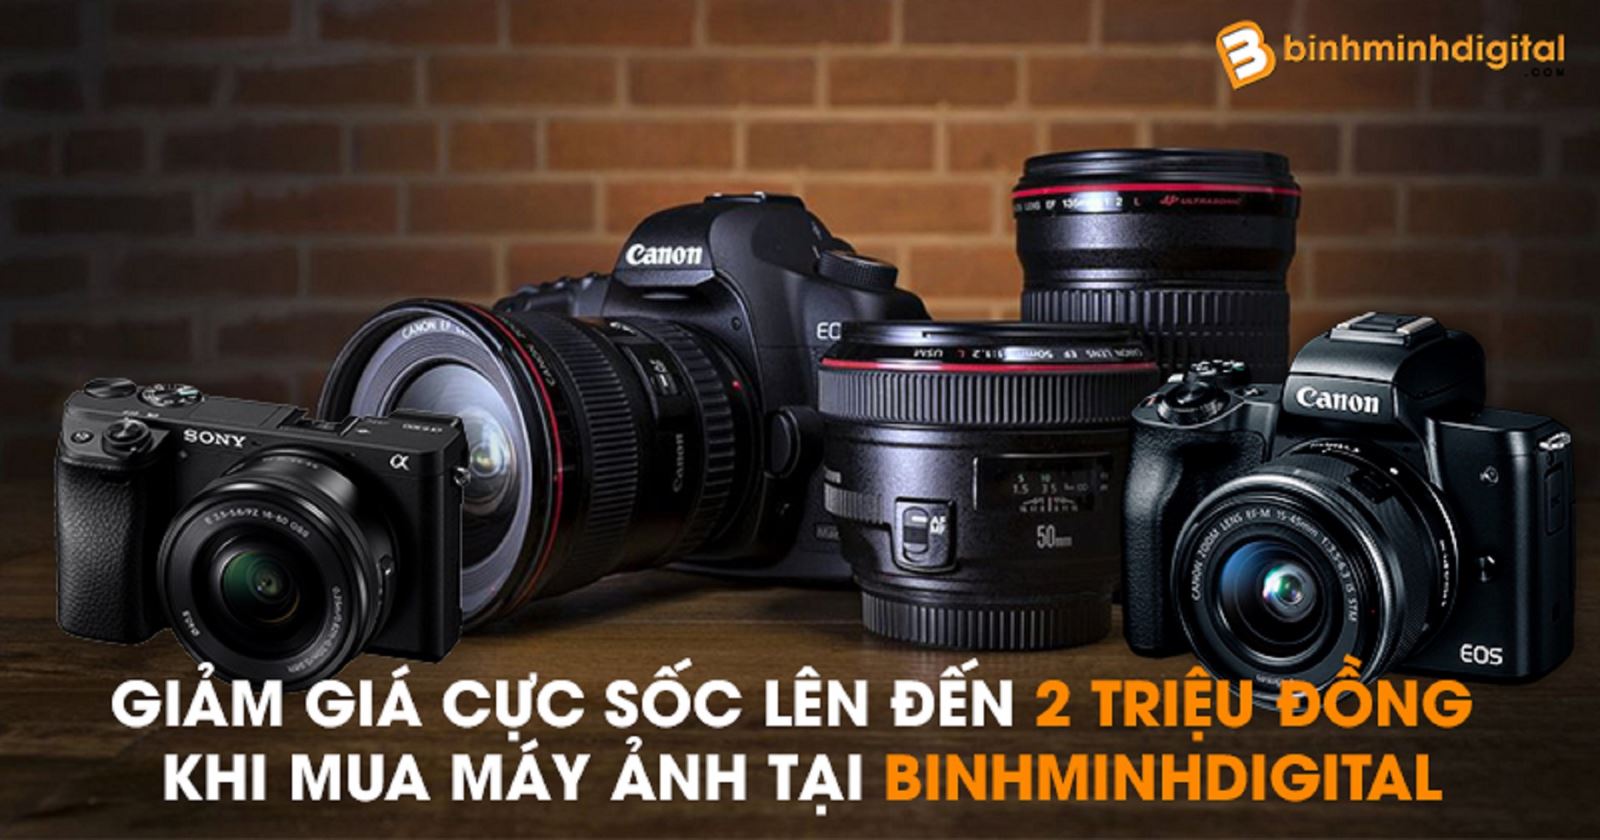 Giảm giá cực sốc lên đến 2 triệu đồng khi mua máy ảnh tại BinhMinhDigital